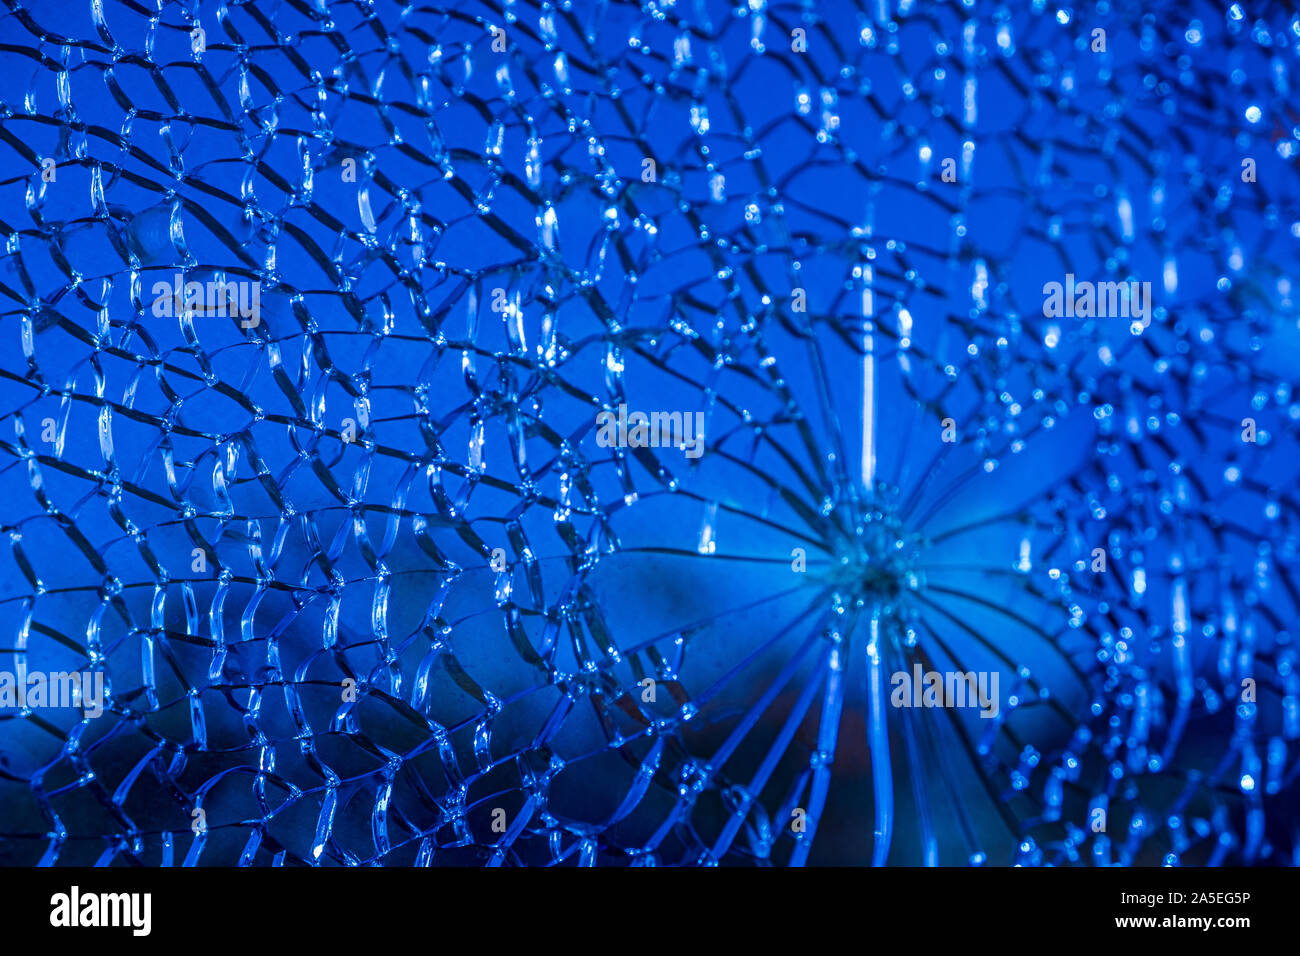 Blue incrinato nel riquadro vetro cloes-la creazione della cellula di interesse-come modelli astratti. Immagine concettuale Foto Stock